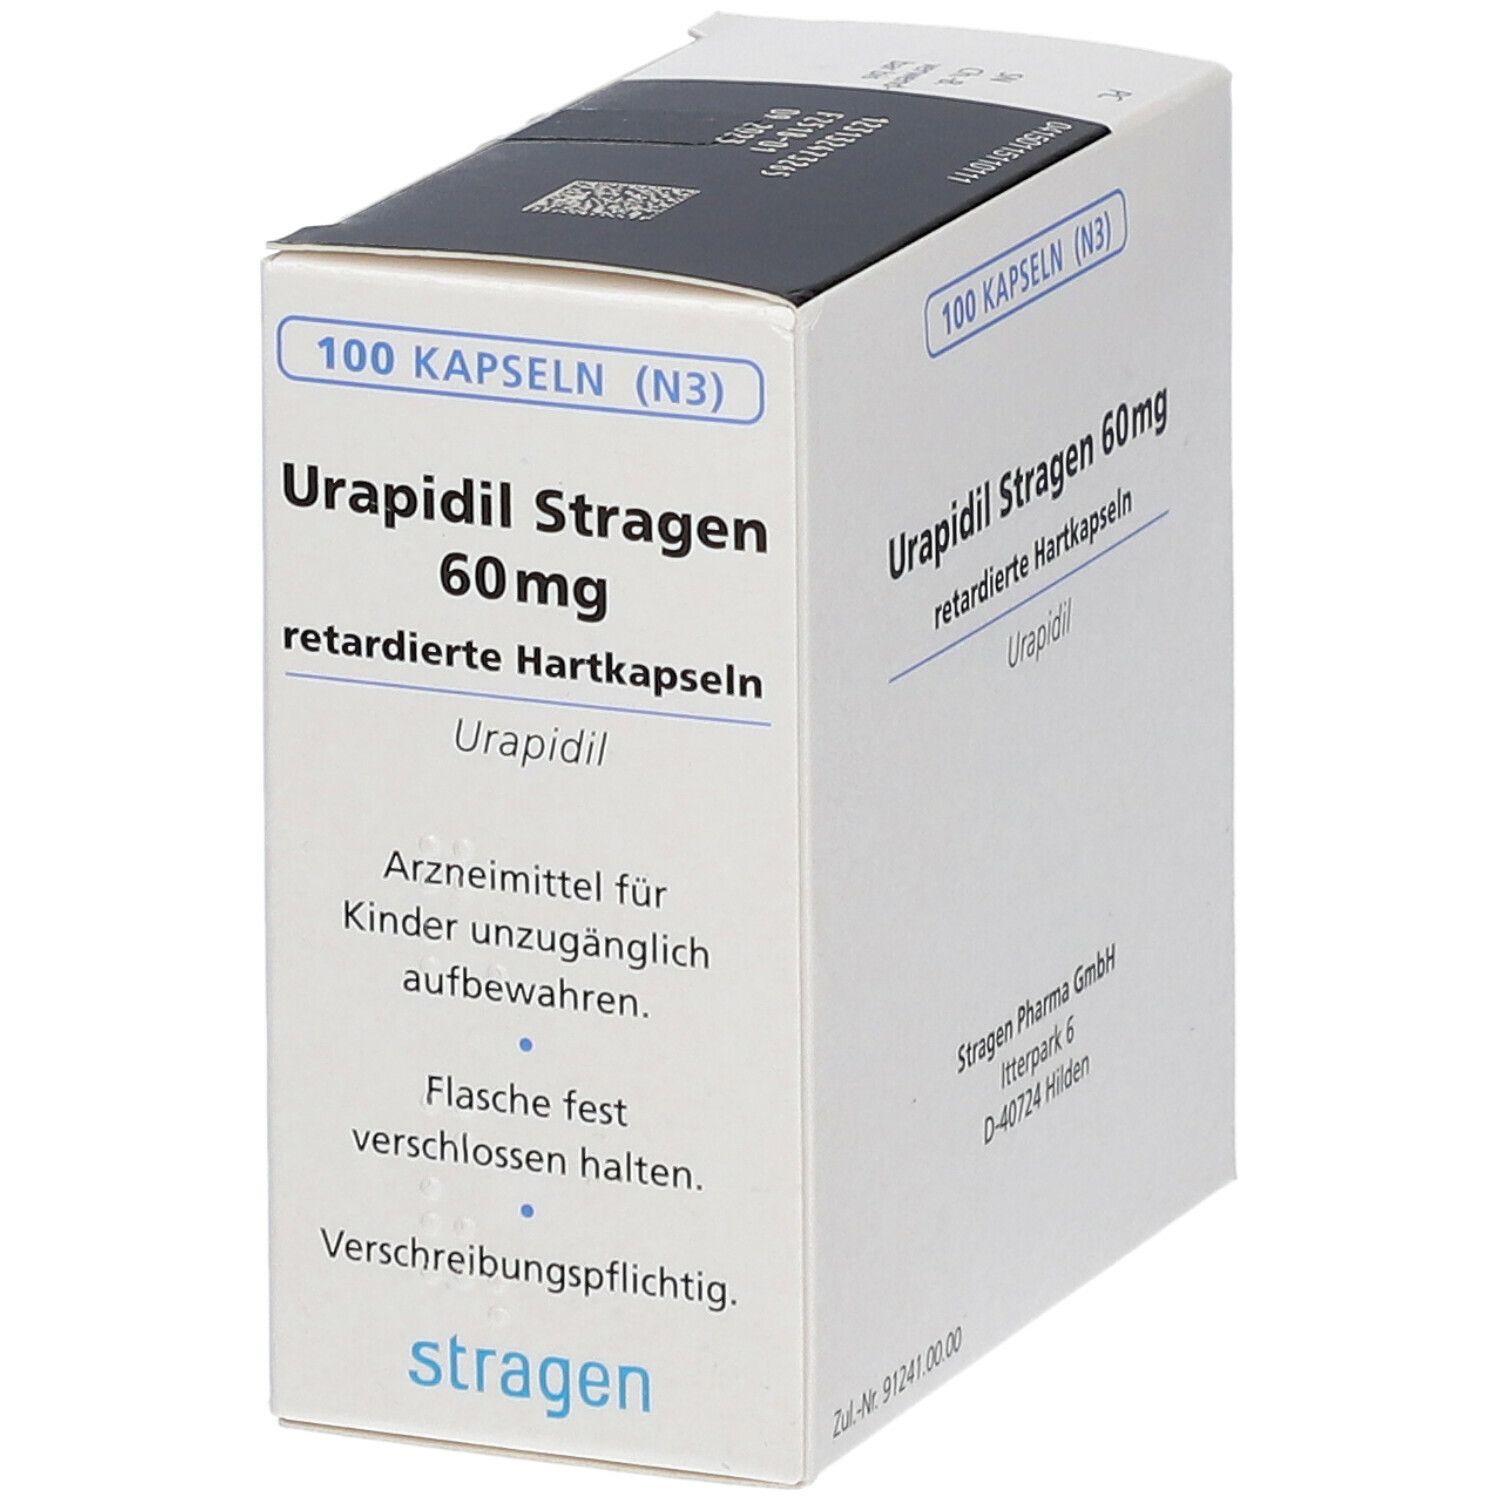 Urapidil Stragen 60 mg